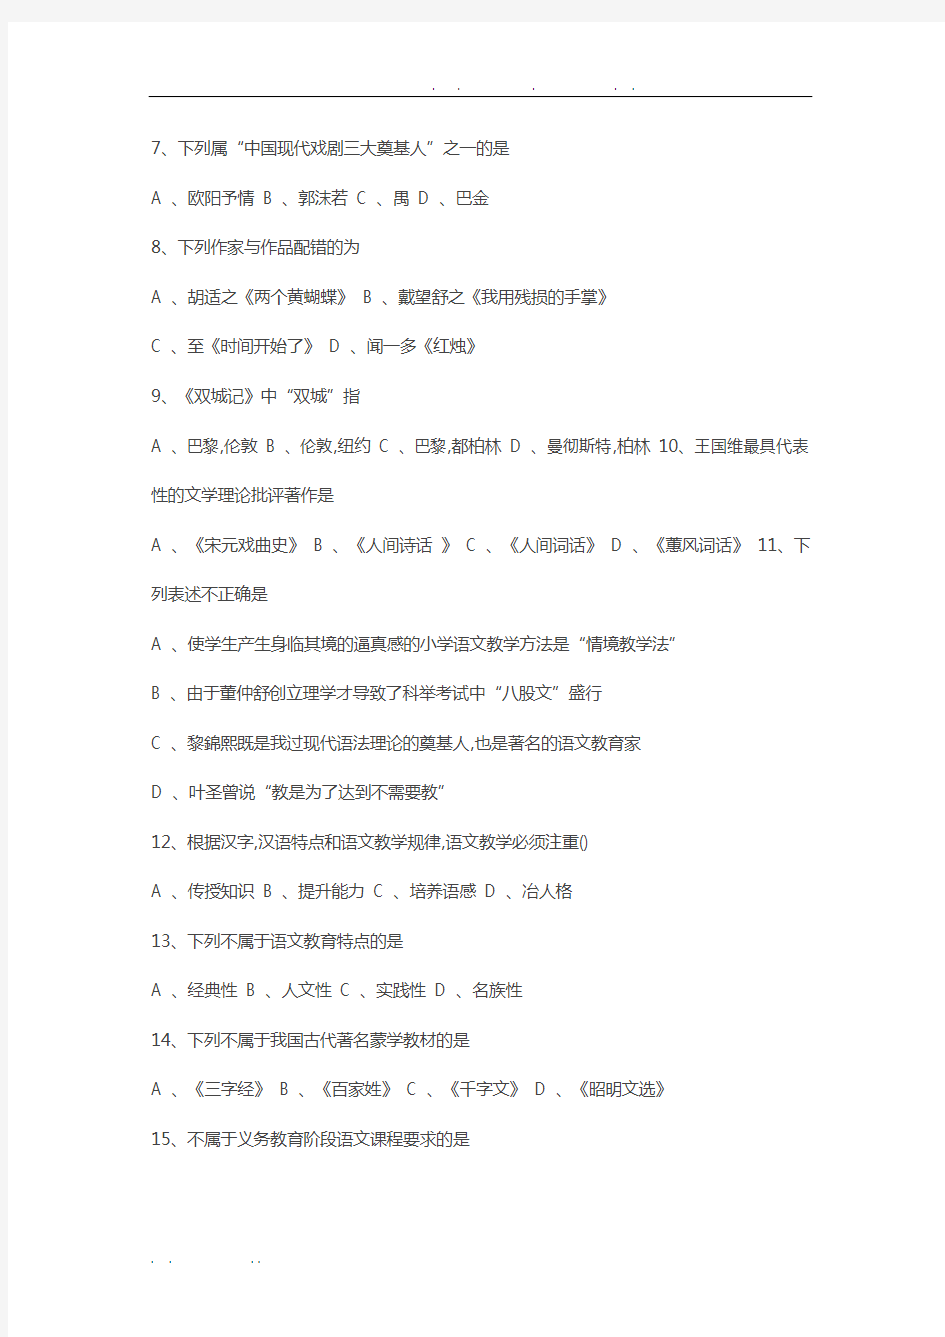 2016年湖北省农村义务教师招聘考试《小学语文》真题试卷及答案解析